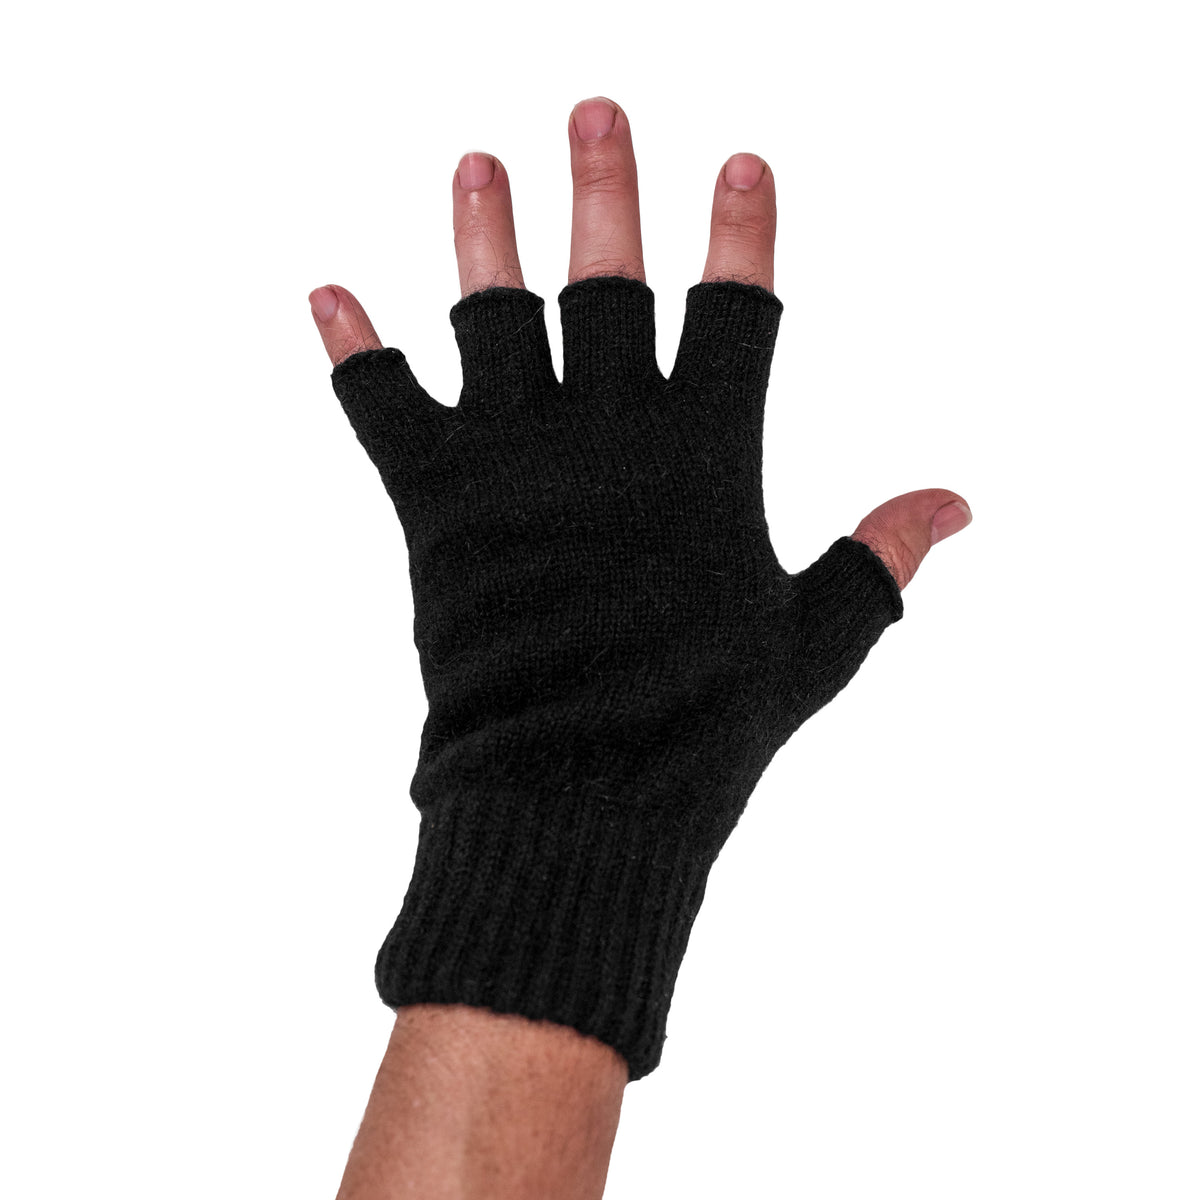 Adult Black Fingerless Gloves